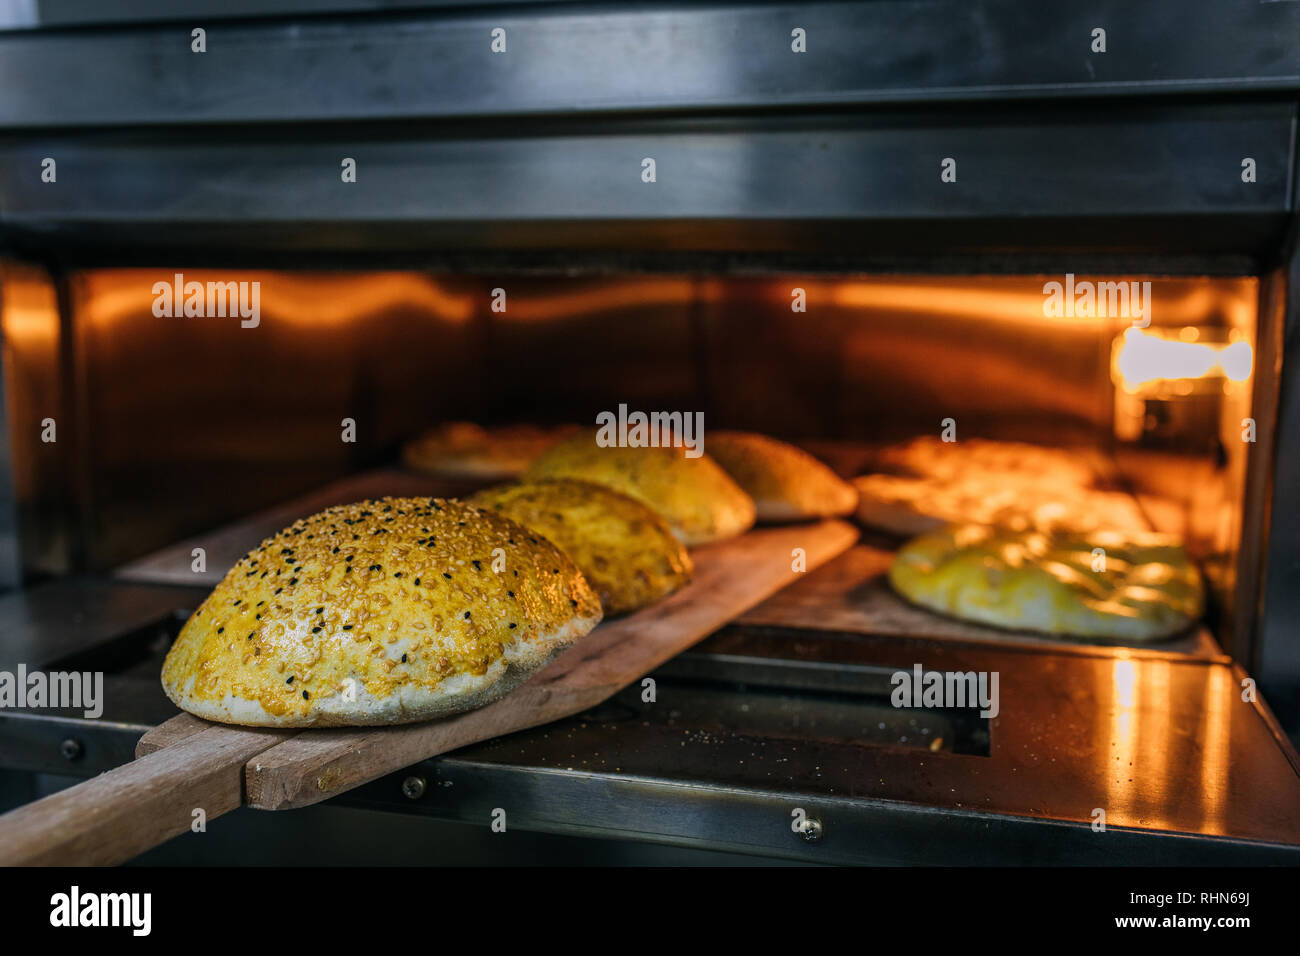 Pita turc traditionnel ou pide pain dans un four ou une cuisinière.  Boulangerie ou boulangerie concept image Photo Stock - Alamy